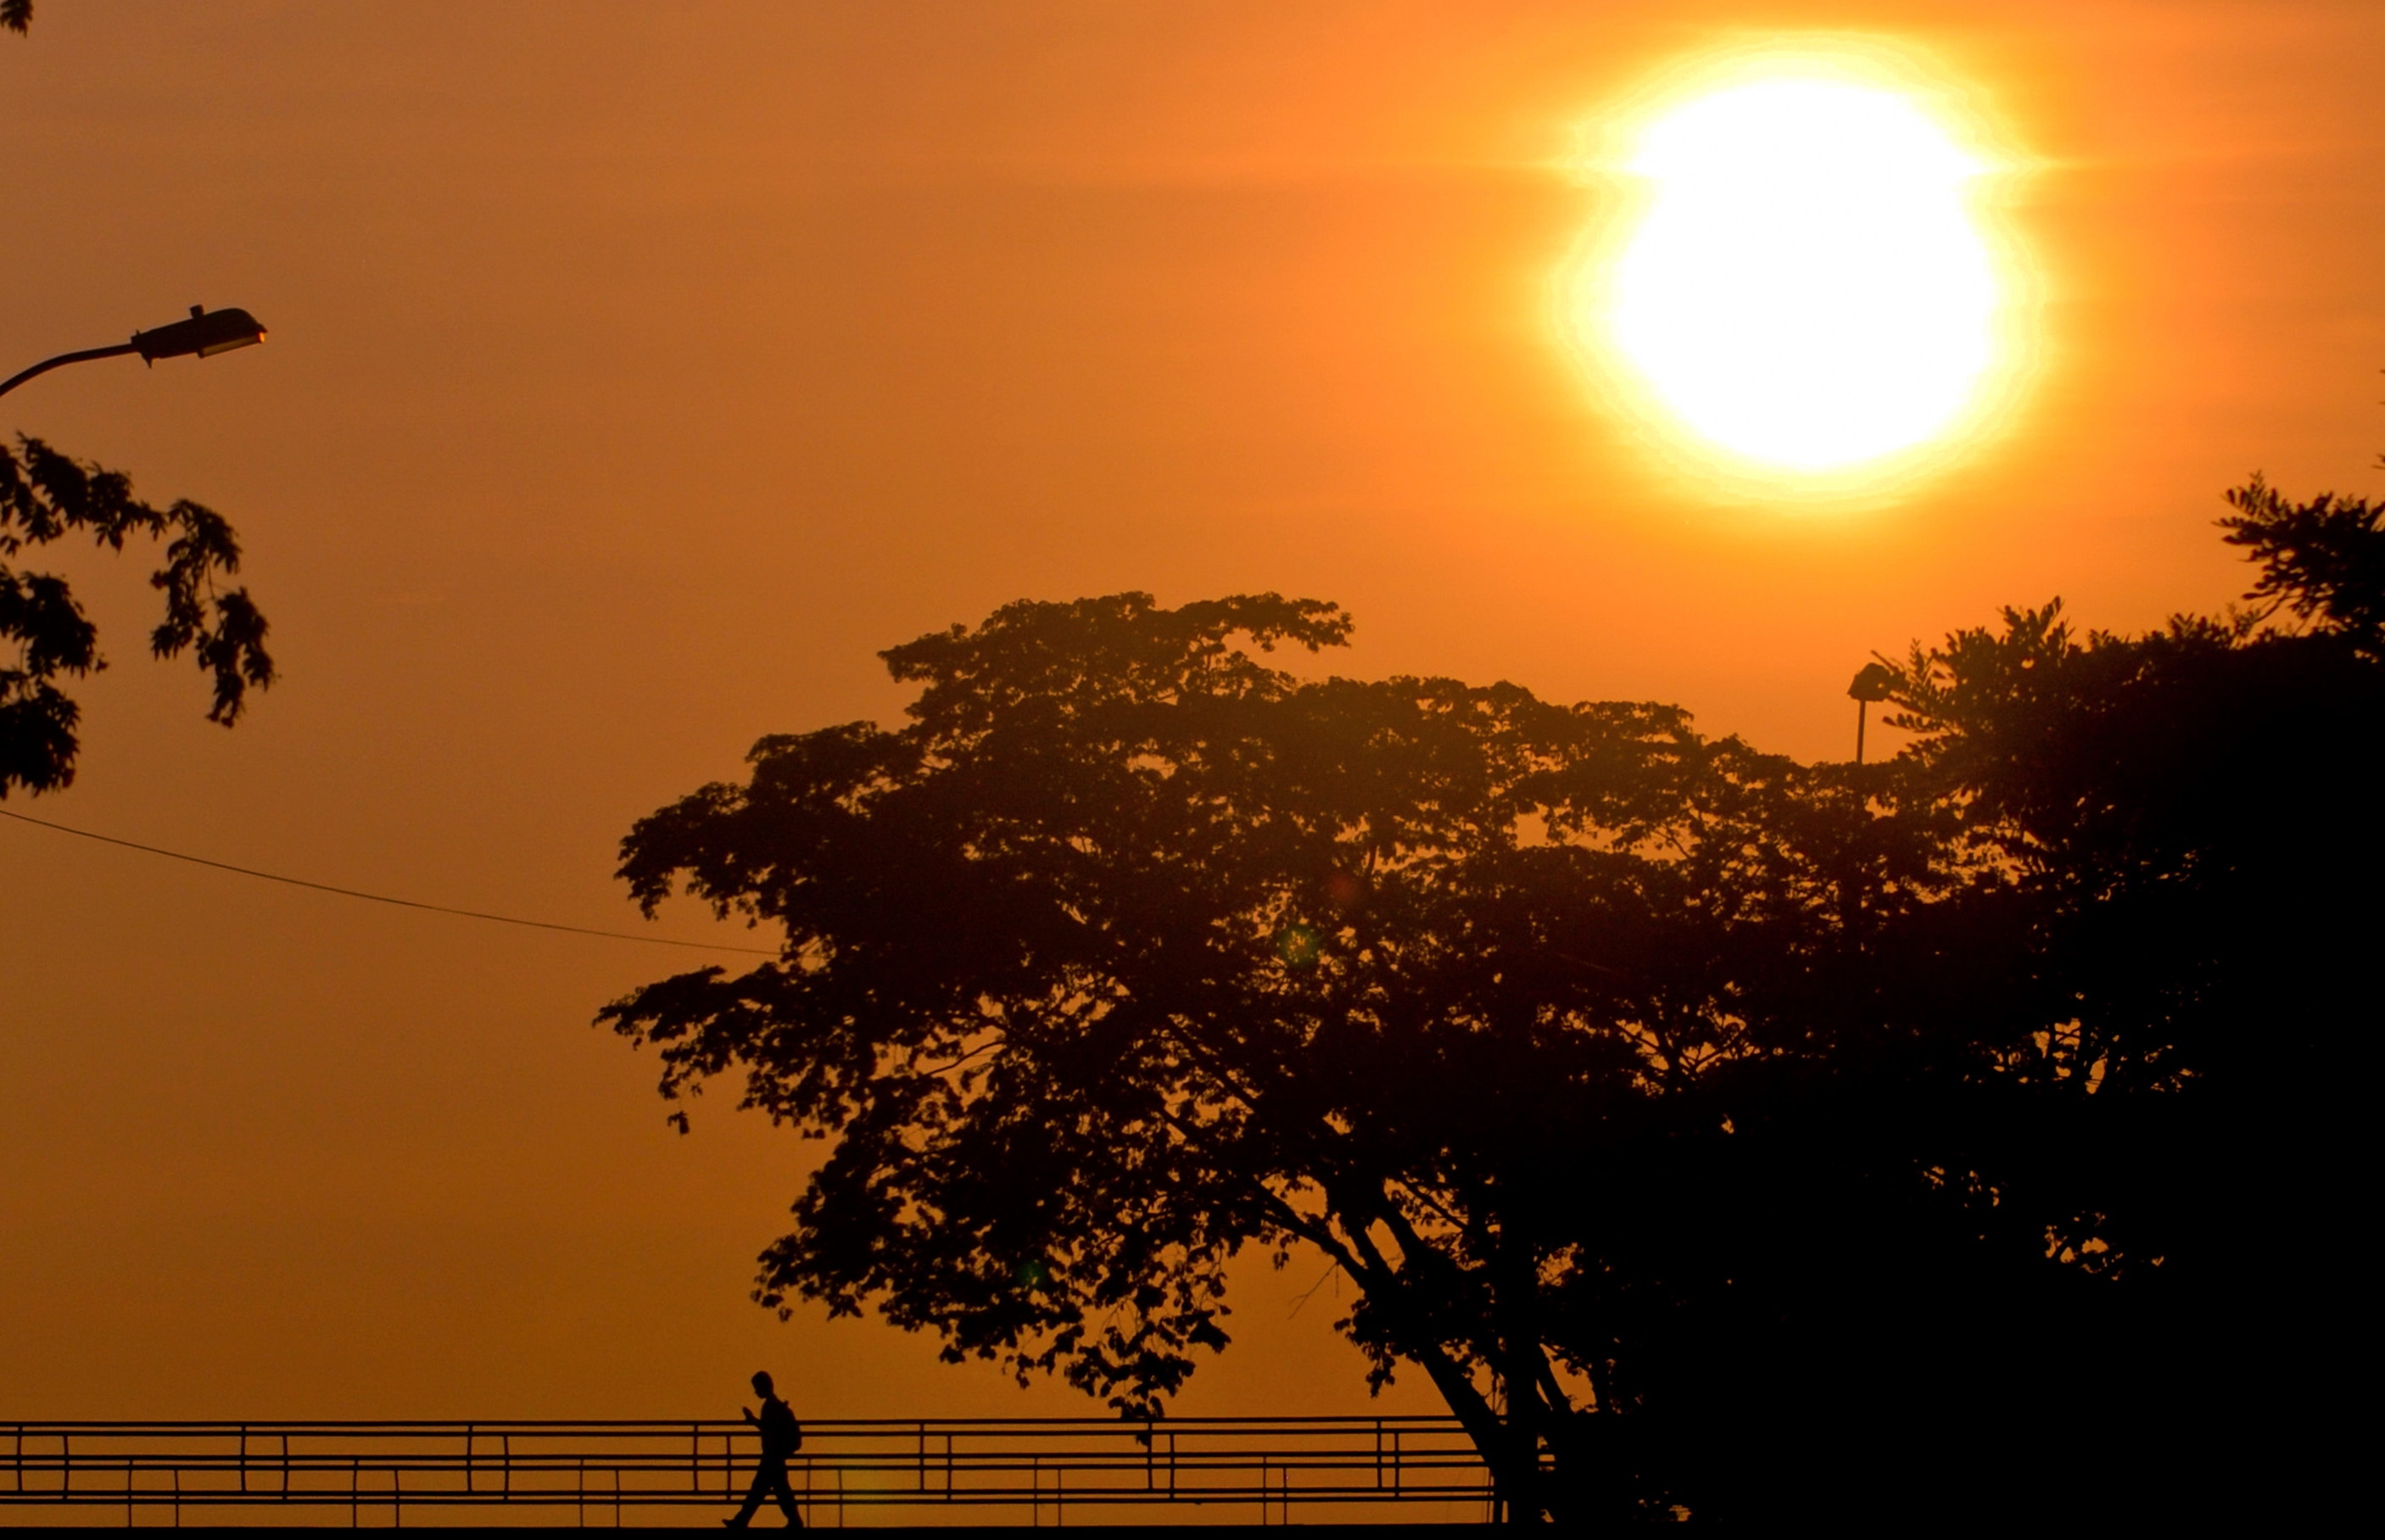 El calor extremo es una amenaza para la vida en África, pero no